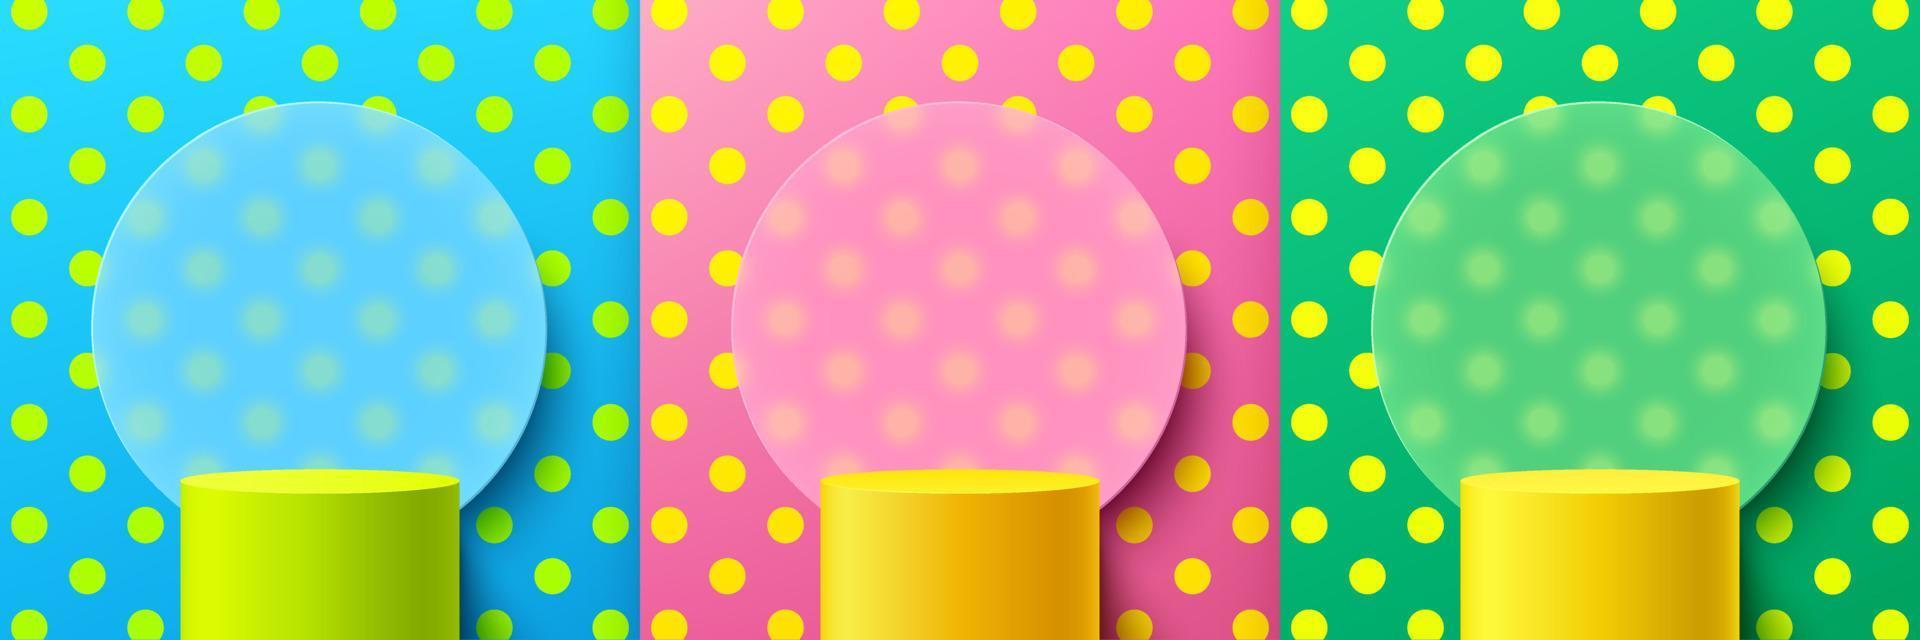 ensemble de podium de piédestal de cylindre jaune, vert, fond de motif à pois de couleur tendance avec fond de morphisme en verre circulaire. rendu vectoriel forme 3d, présentation de l'affichage du produit. scène abstraite.